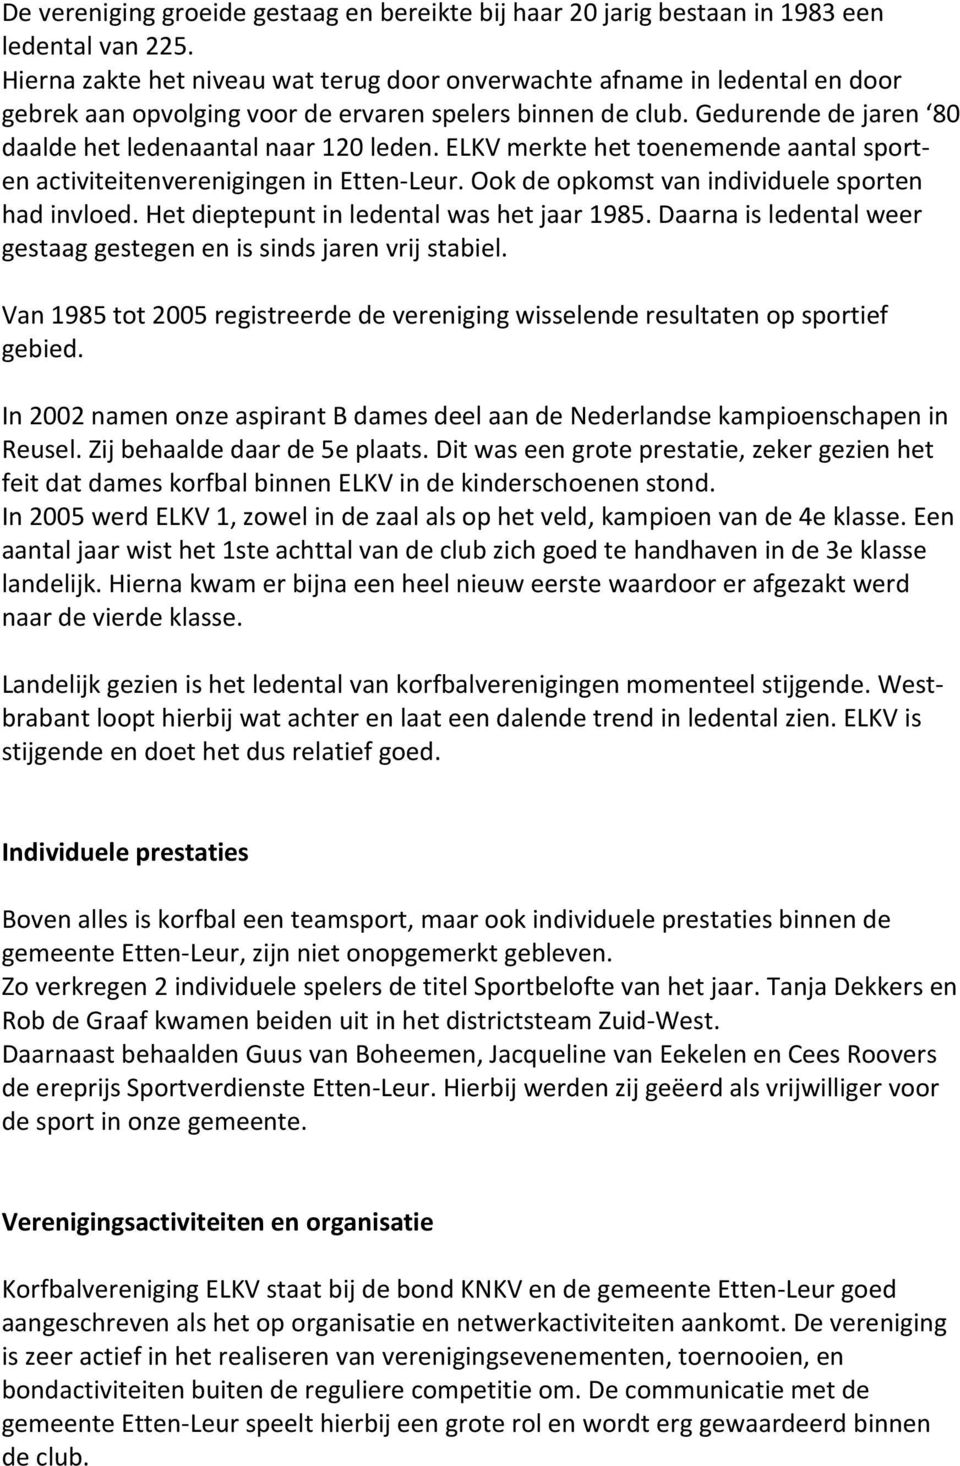 ELKV merkte het toenemende aantal sporten activiteitenverenigingen in Etten-Leur. Ook de opkomst van individuele sporten had invloed. Het dieptepunt in ledental was het jaar 1985.